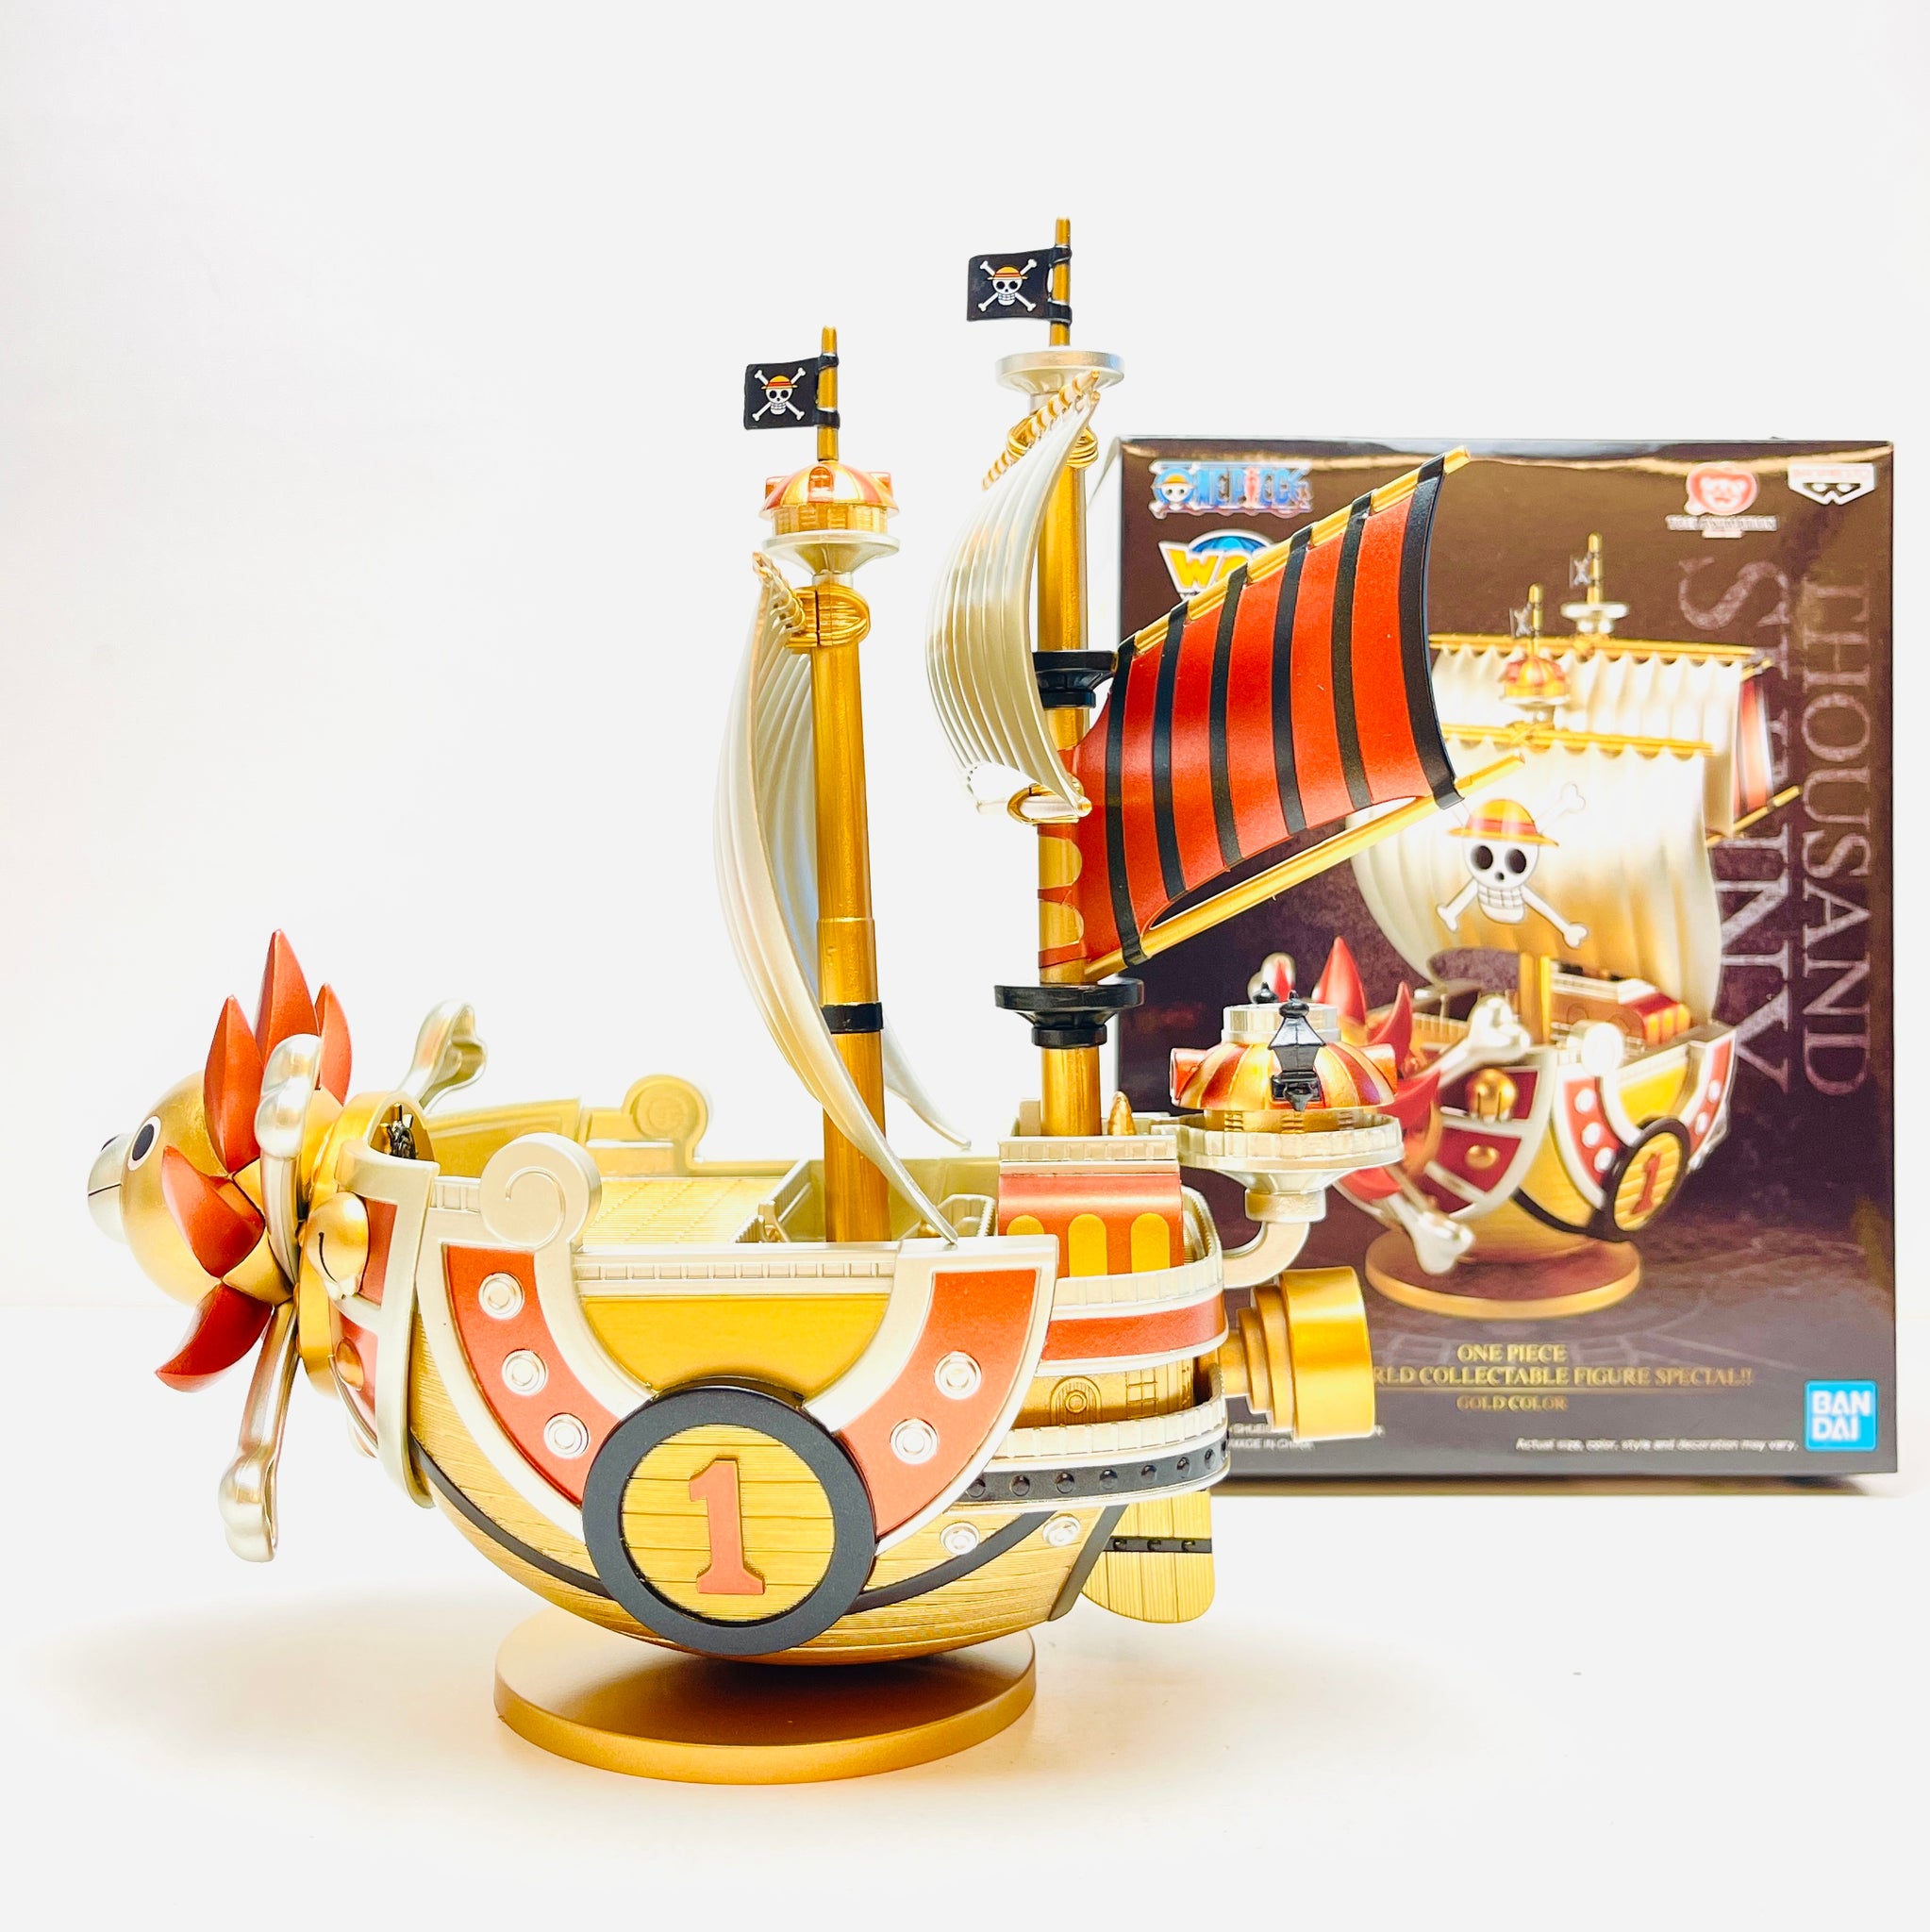 Estátua Banpresto One Piece Mega World Collectable Gold Color - Thousand  Sunny